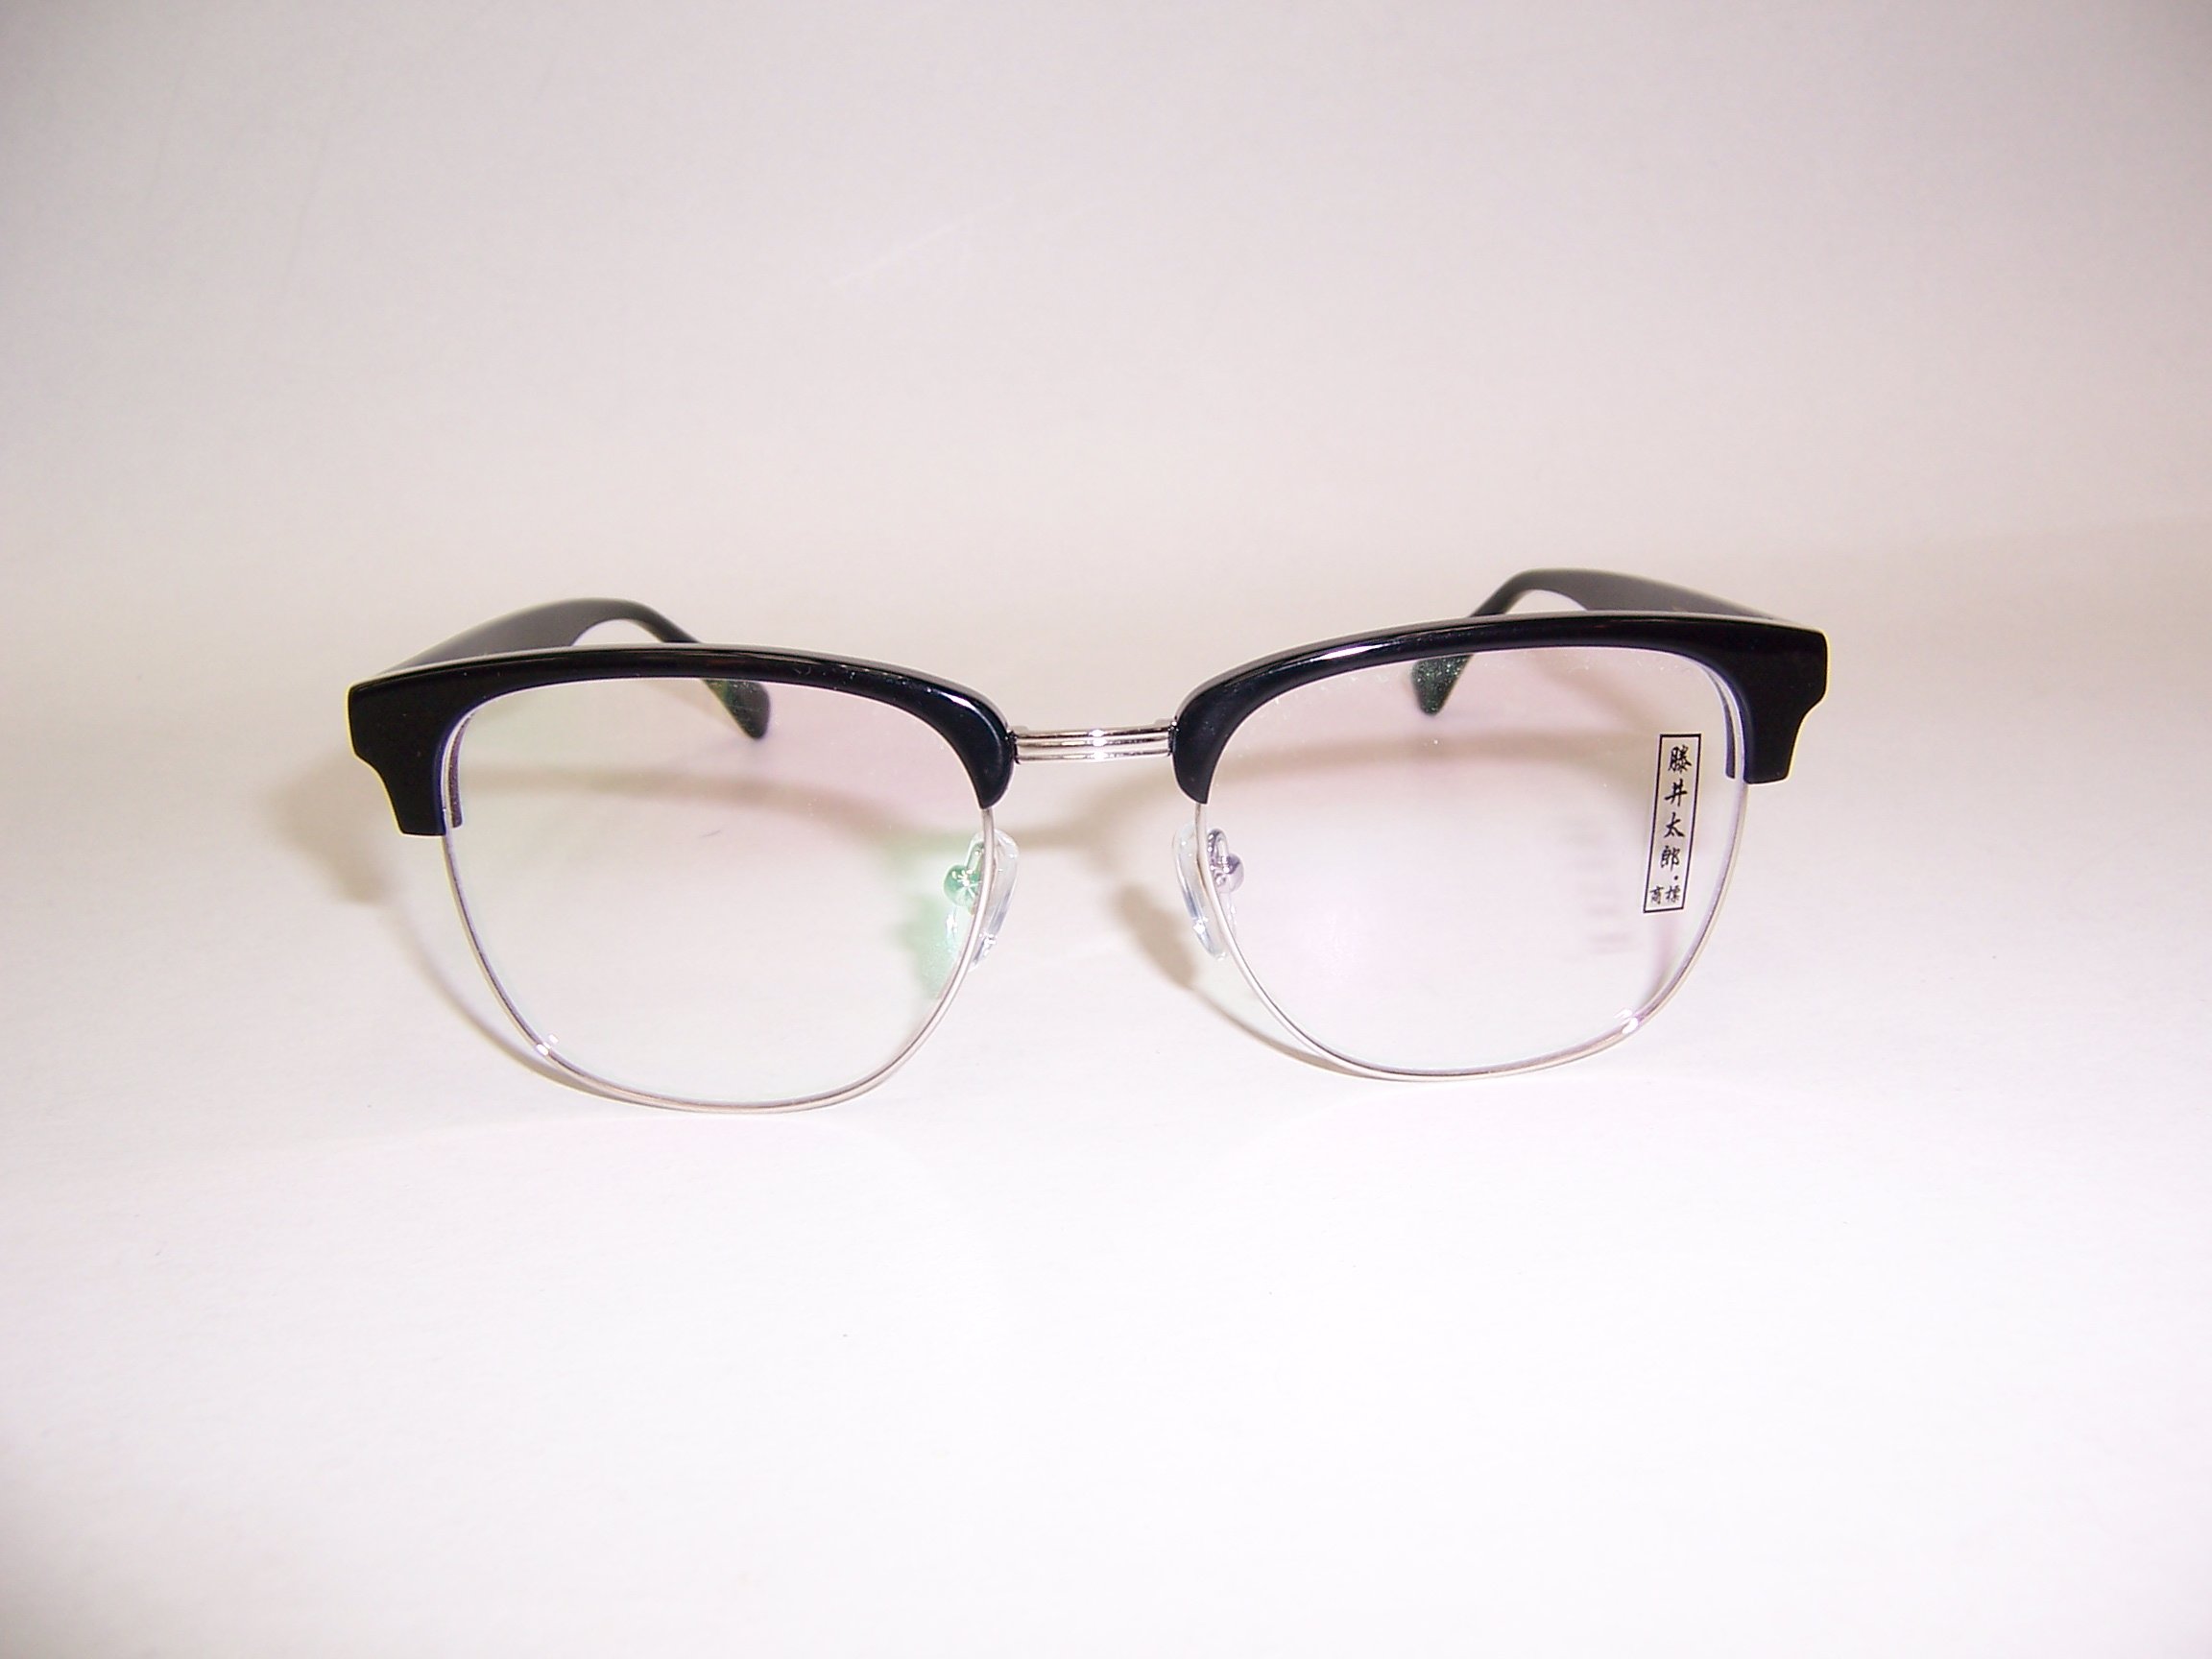 光寶眼鏡城(台南) 藤井太郎,復古複合款眼鏡眉架*複合款金屬與黑色塑板材22337/C06